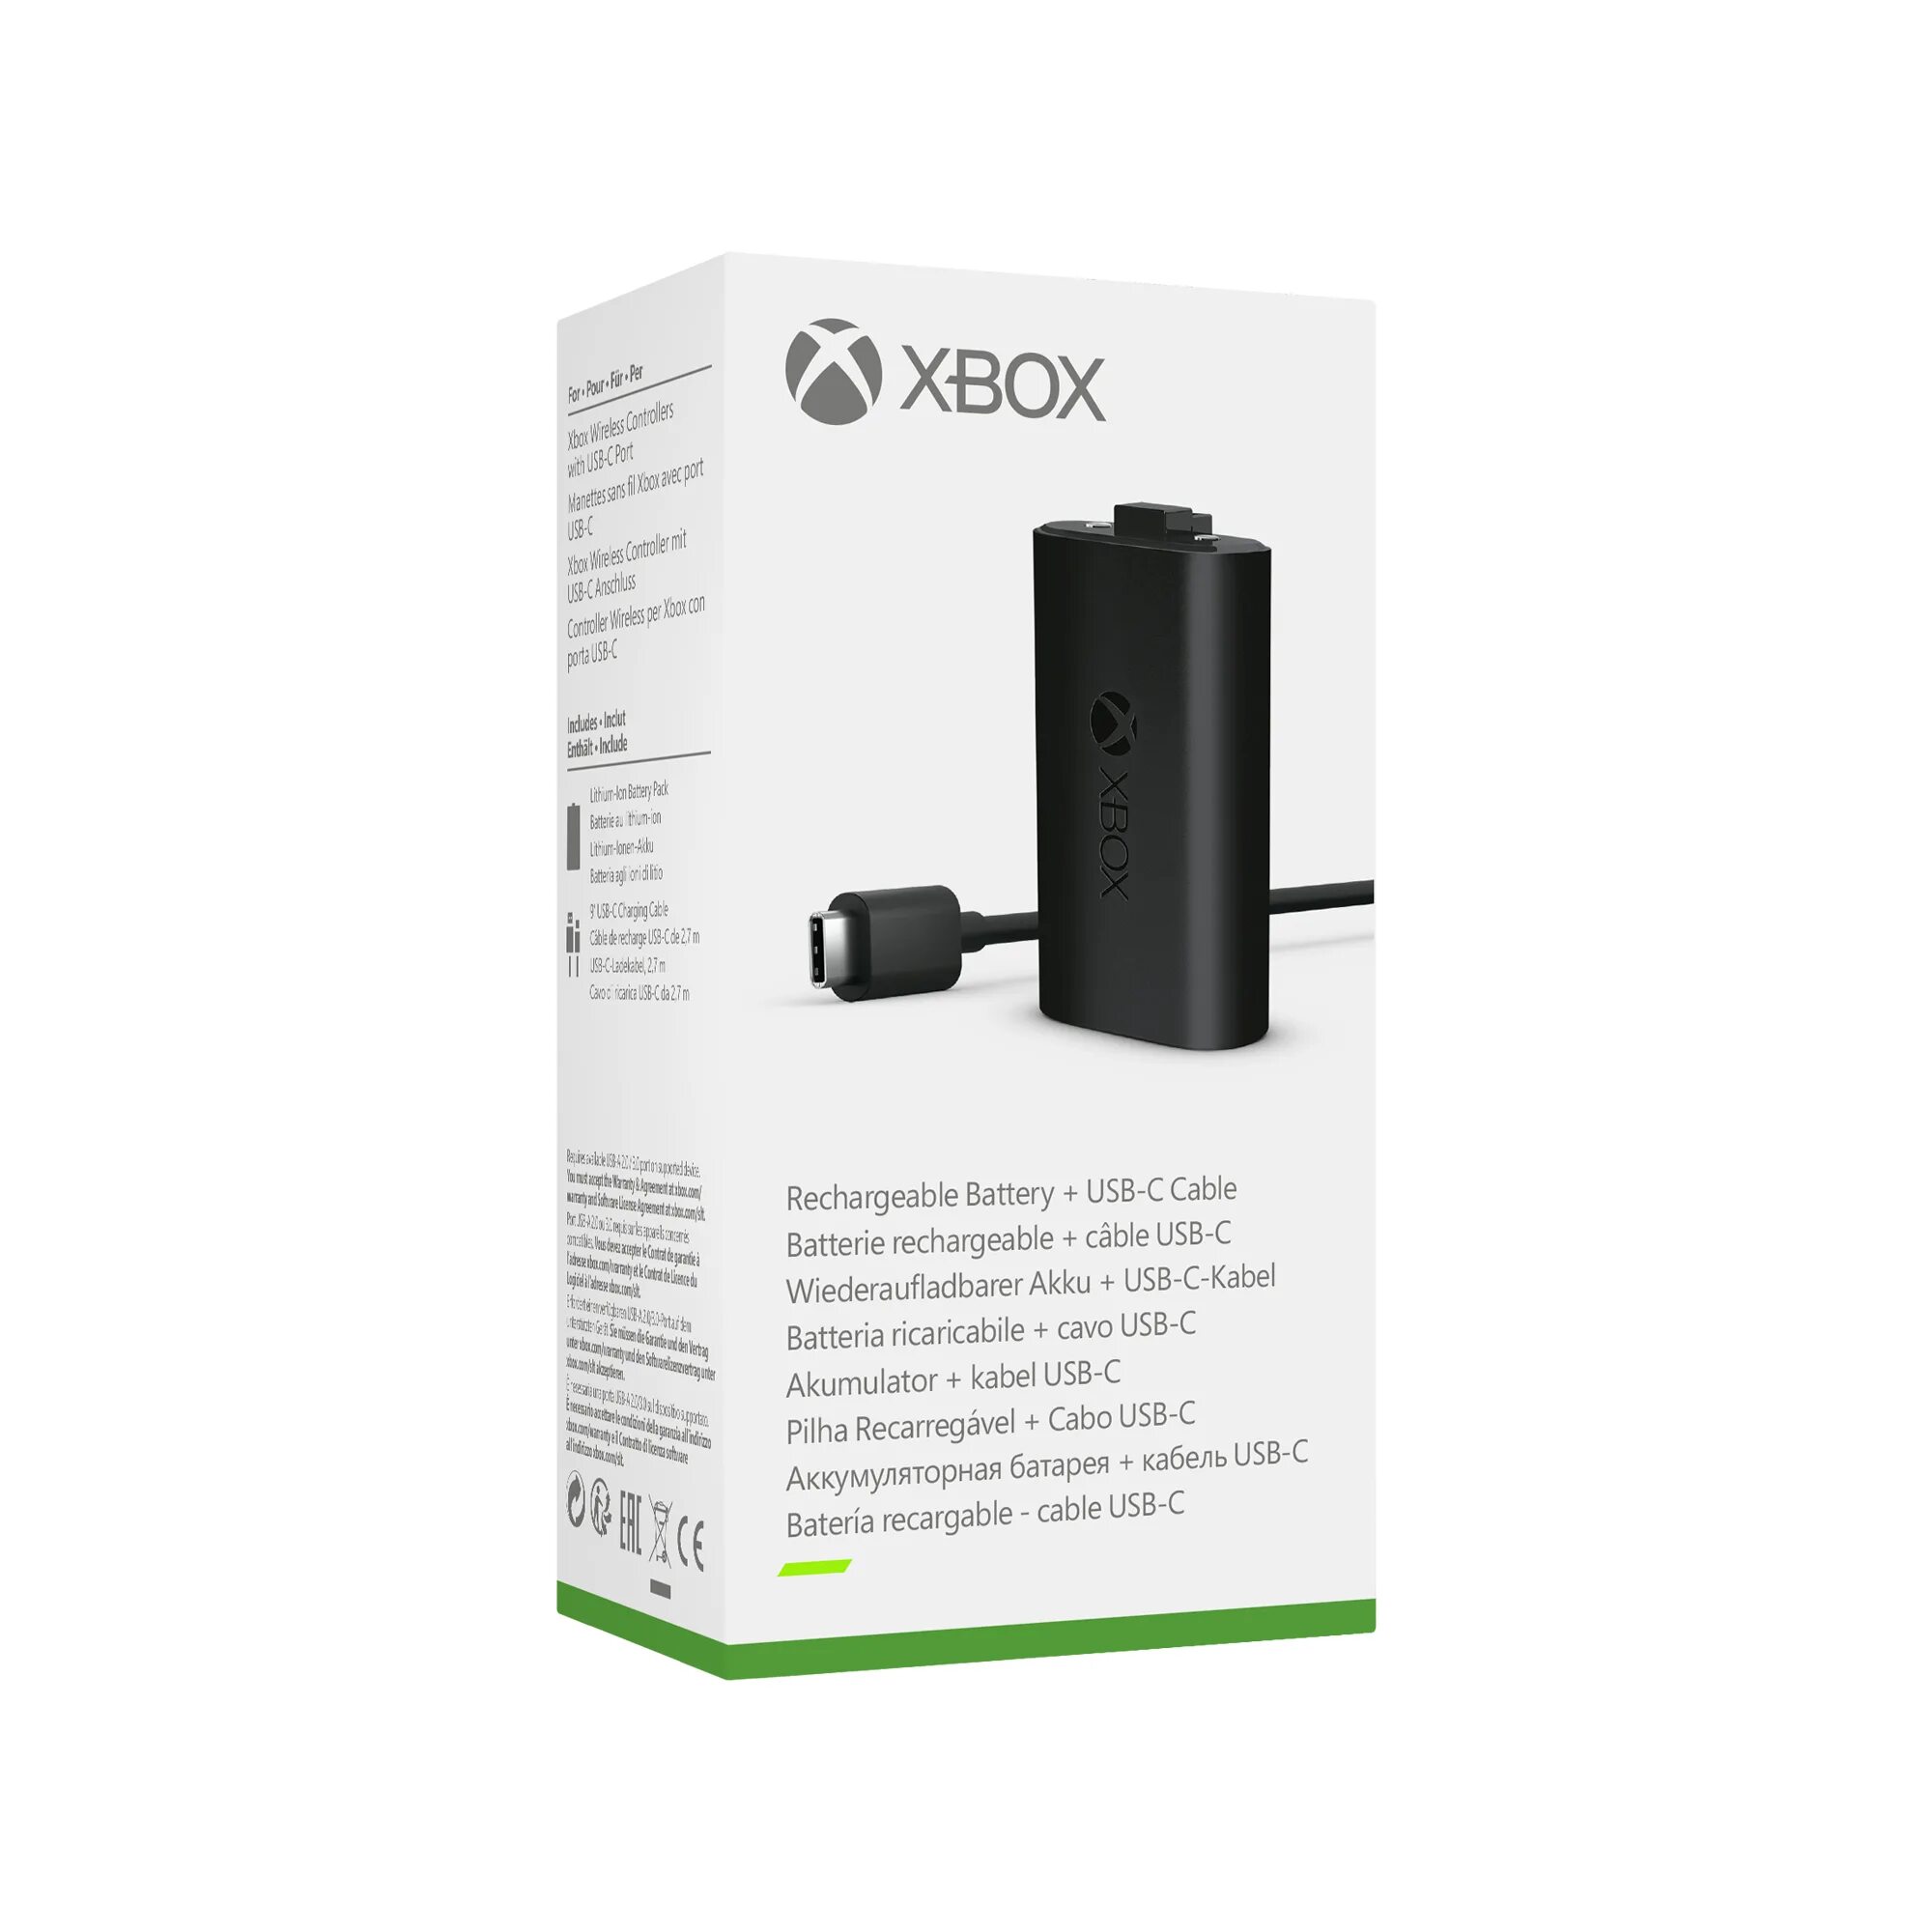 Зарядный комплект Microsoft Play and charge Kit для Xbox one. Геймпад Xbox Series s аккумулятор. Аккумулятор с зарядкой для геймпада Xbox one. Аккумуляторная батарея Xbox и кабель USB-C. Аккумулятор для джойстика xbox